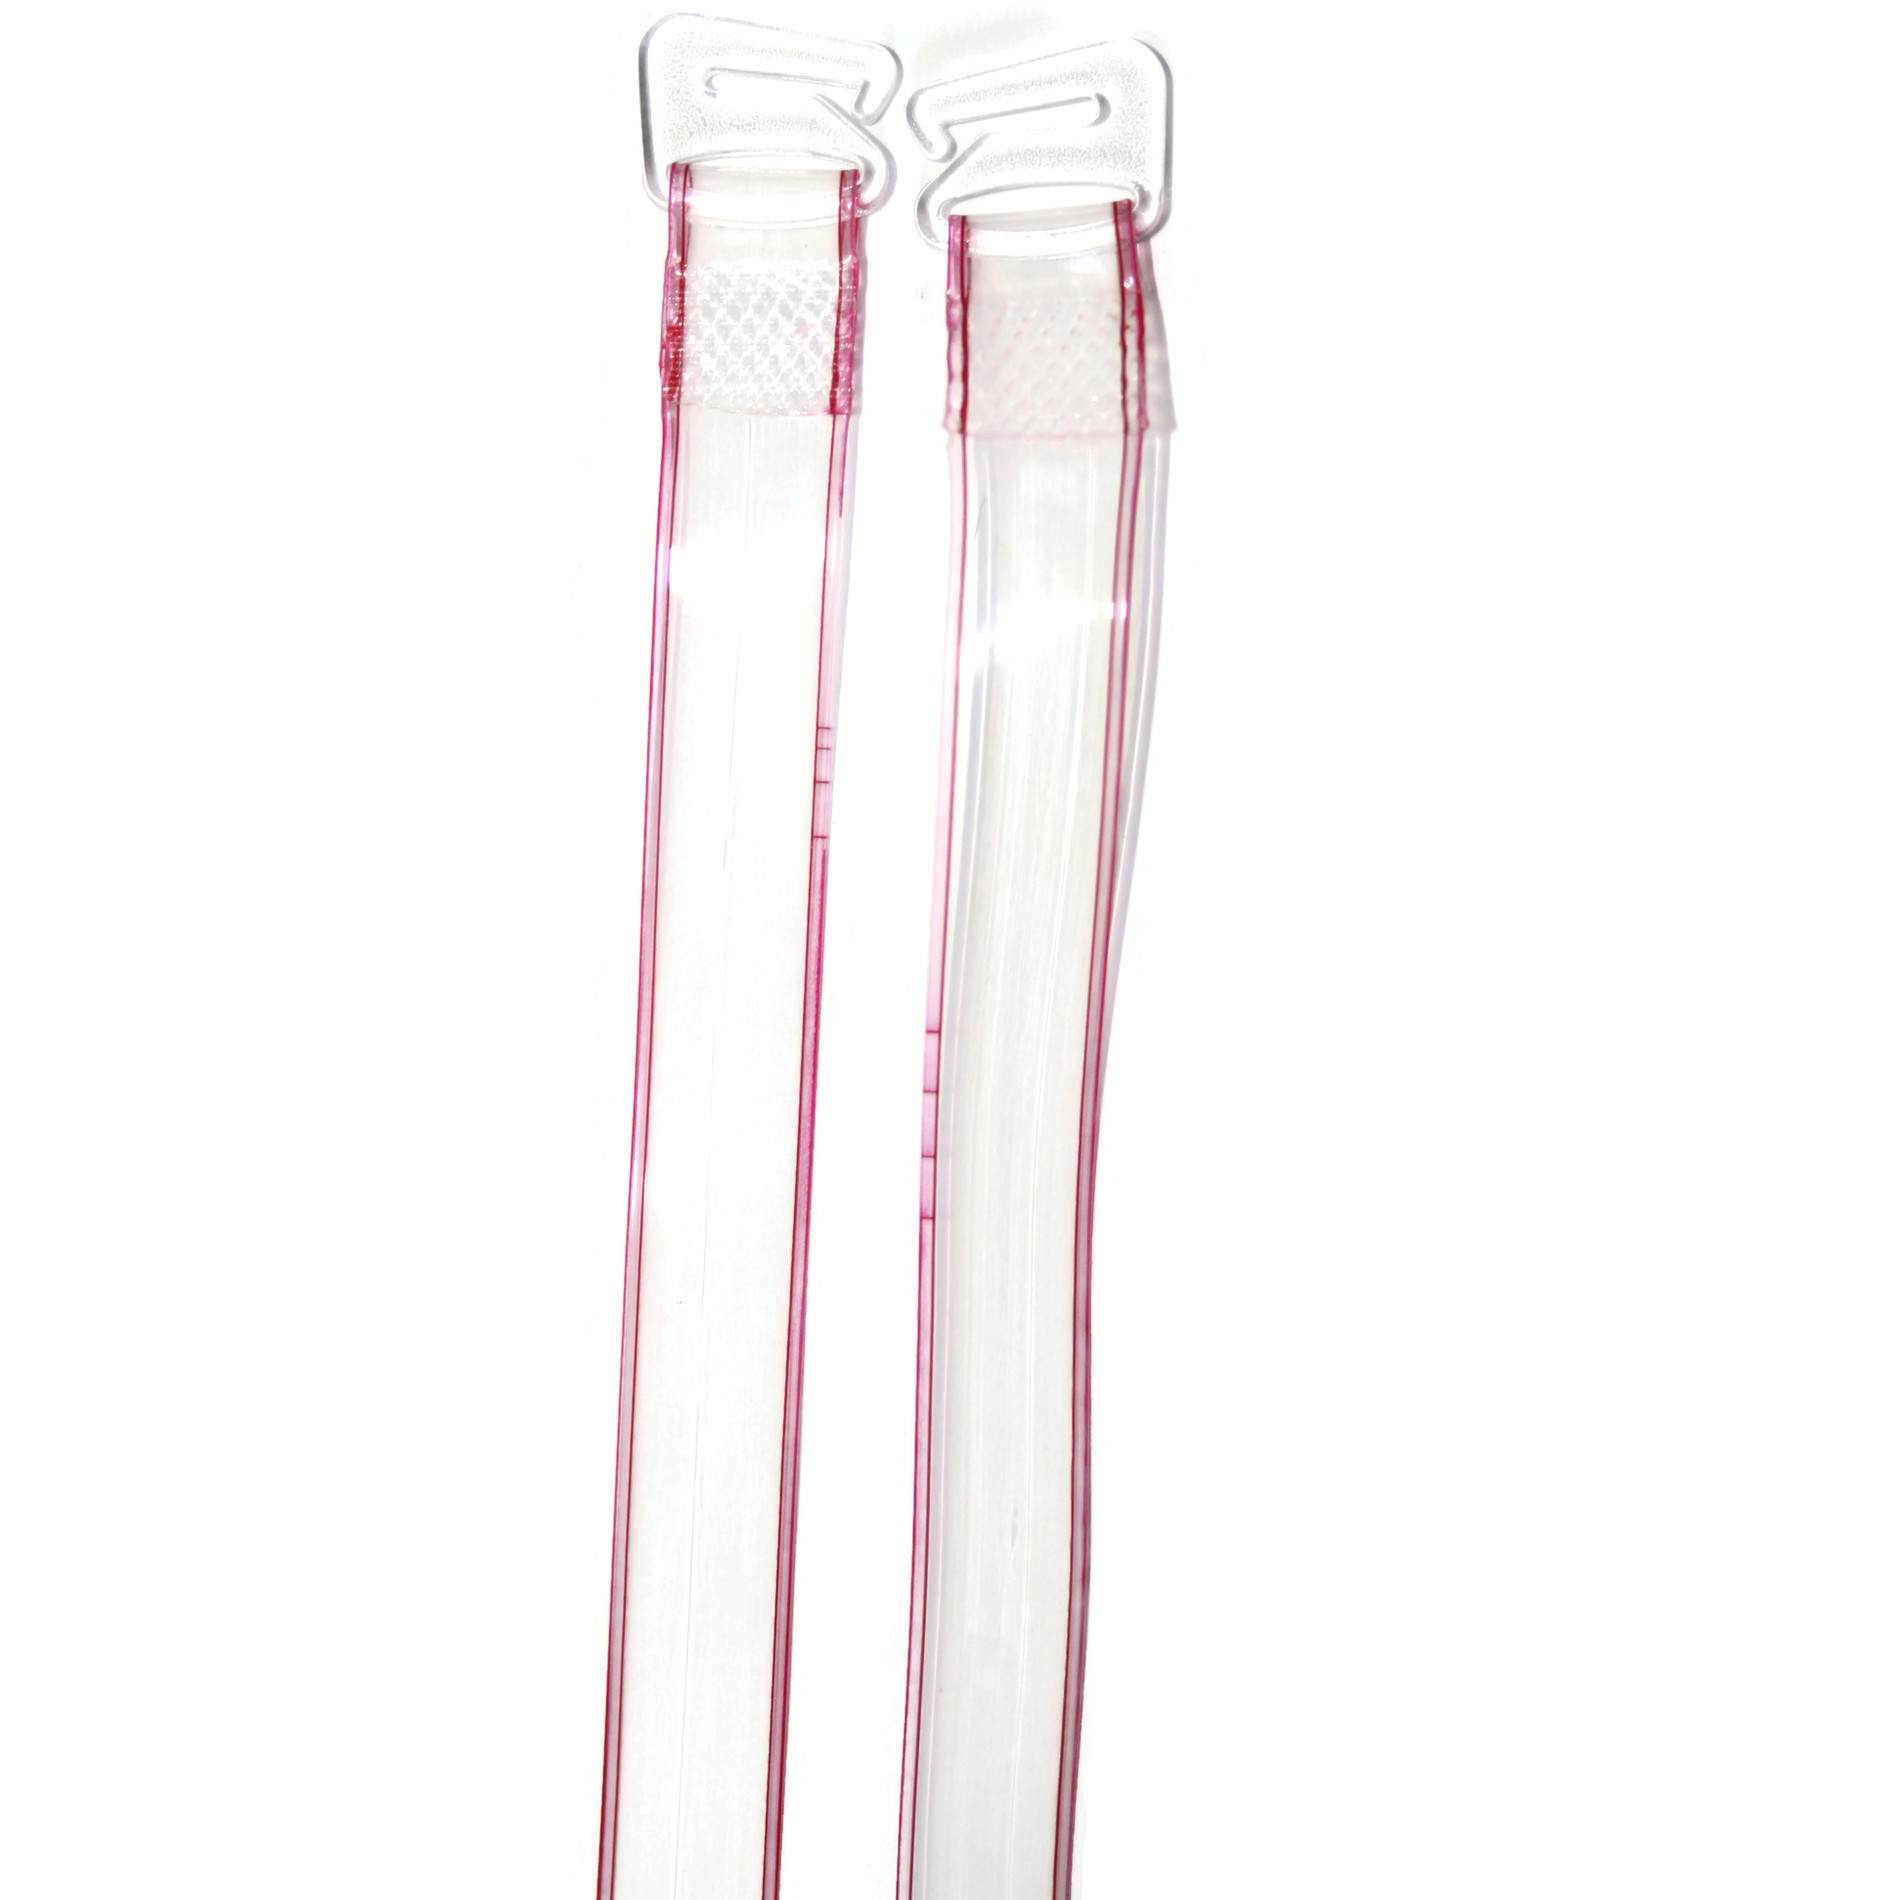 BH Träger / Silikonträger mit Streifen, transparent, 10mm breit rot